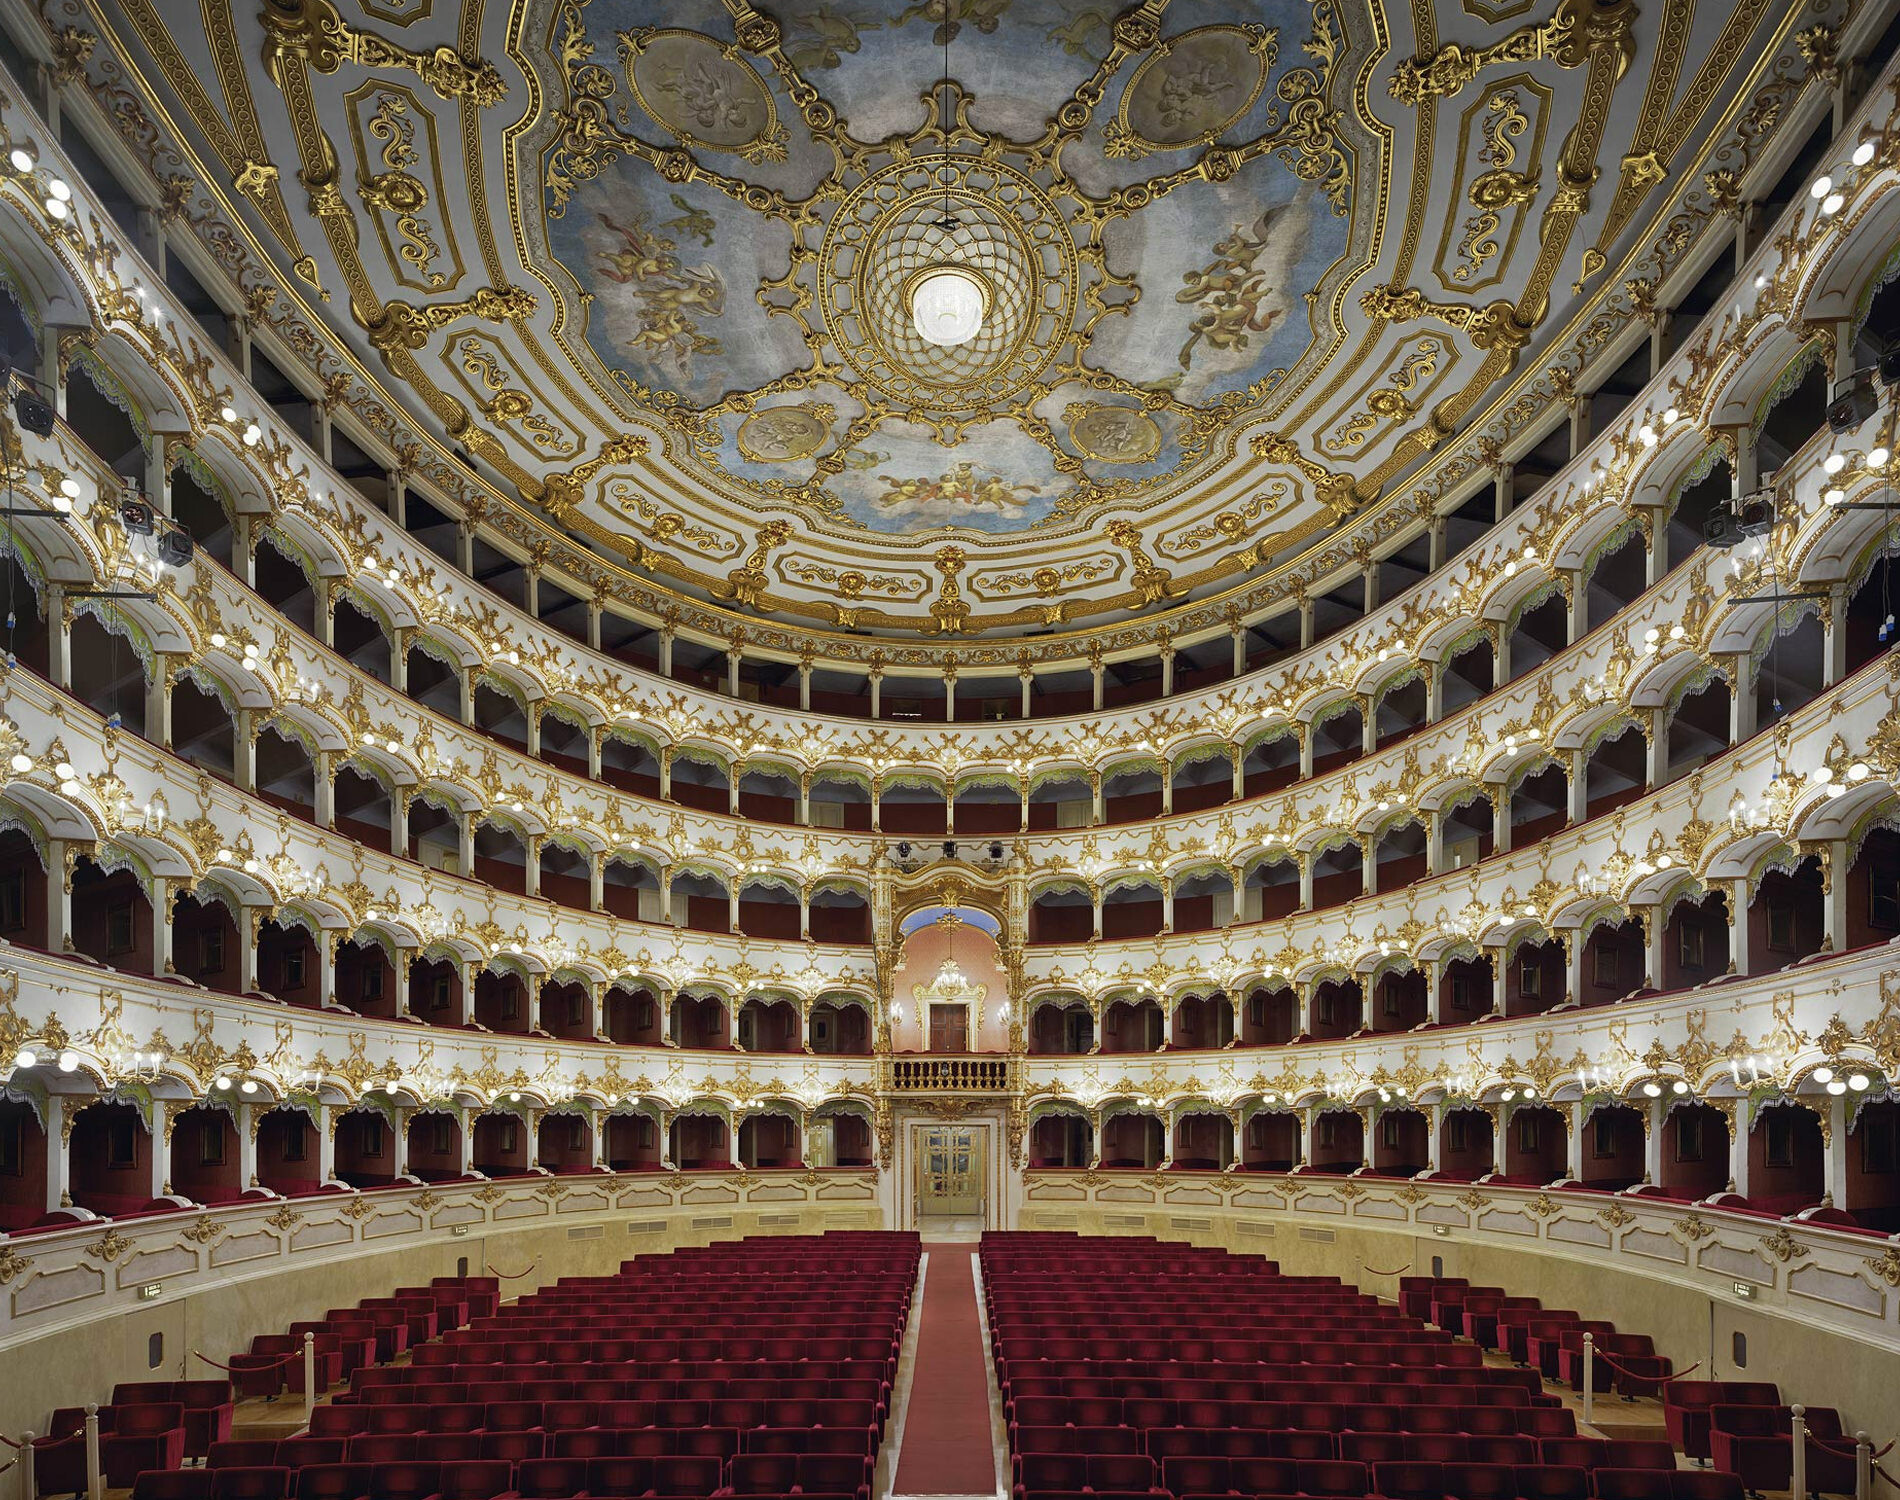 Муниципальный оперный театр, Пьяченца, Италия, 2010 год. Фотограф Дэвид Левенти